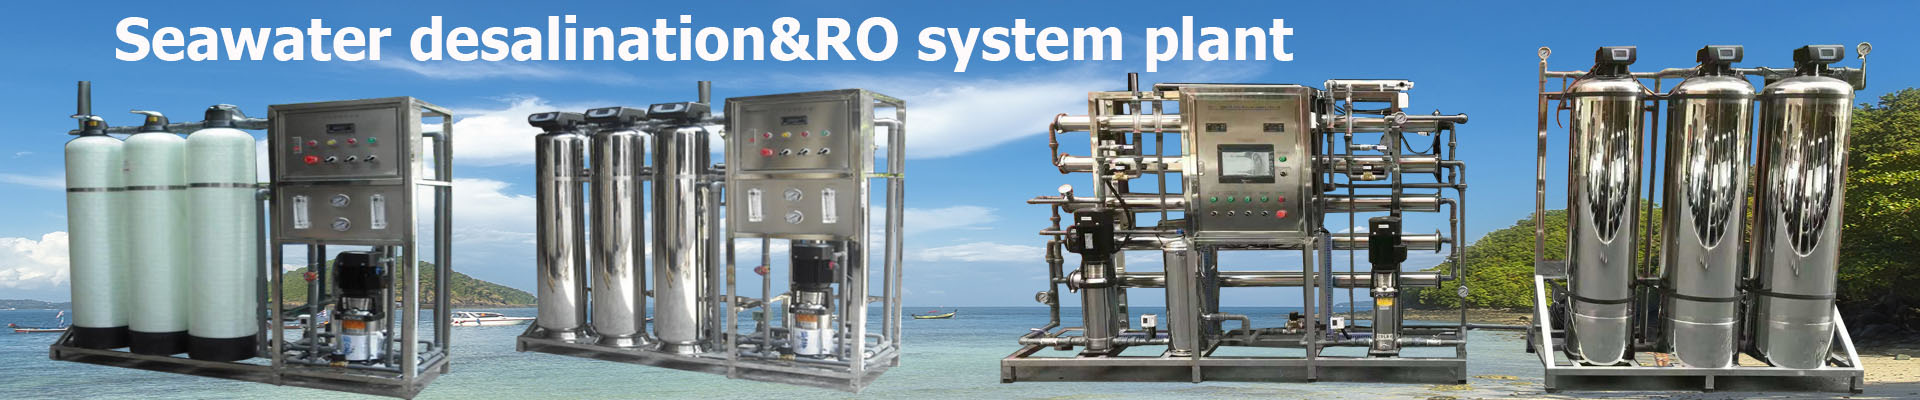 Desalinización de agua de mar&Planta de sistema RO